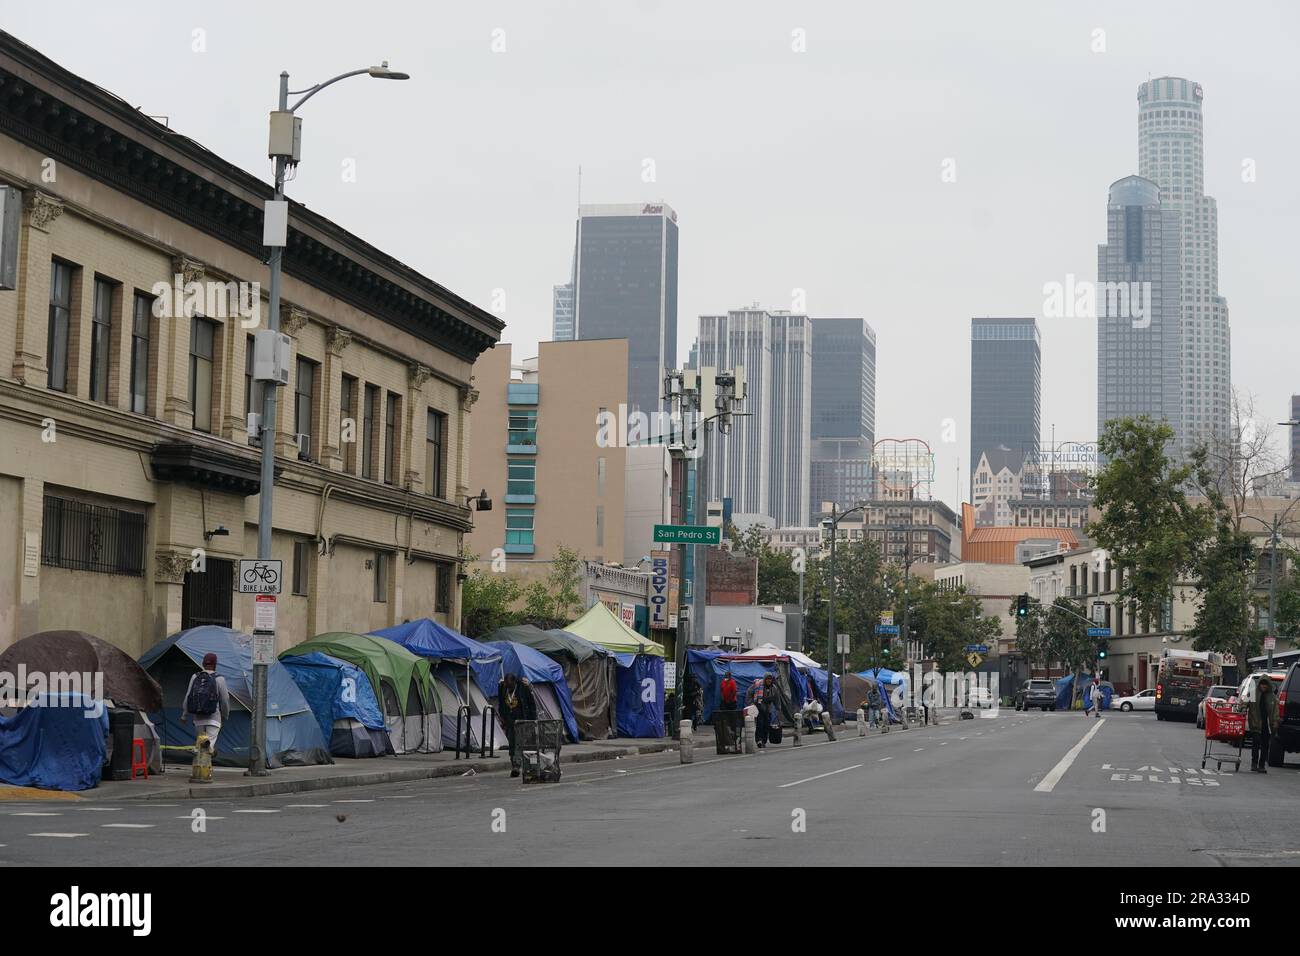 Downtown von Los Angeles, Blick von der Skid Row Gegend Stockfoto